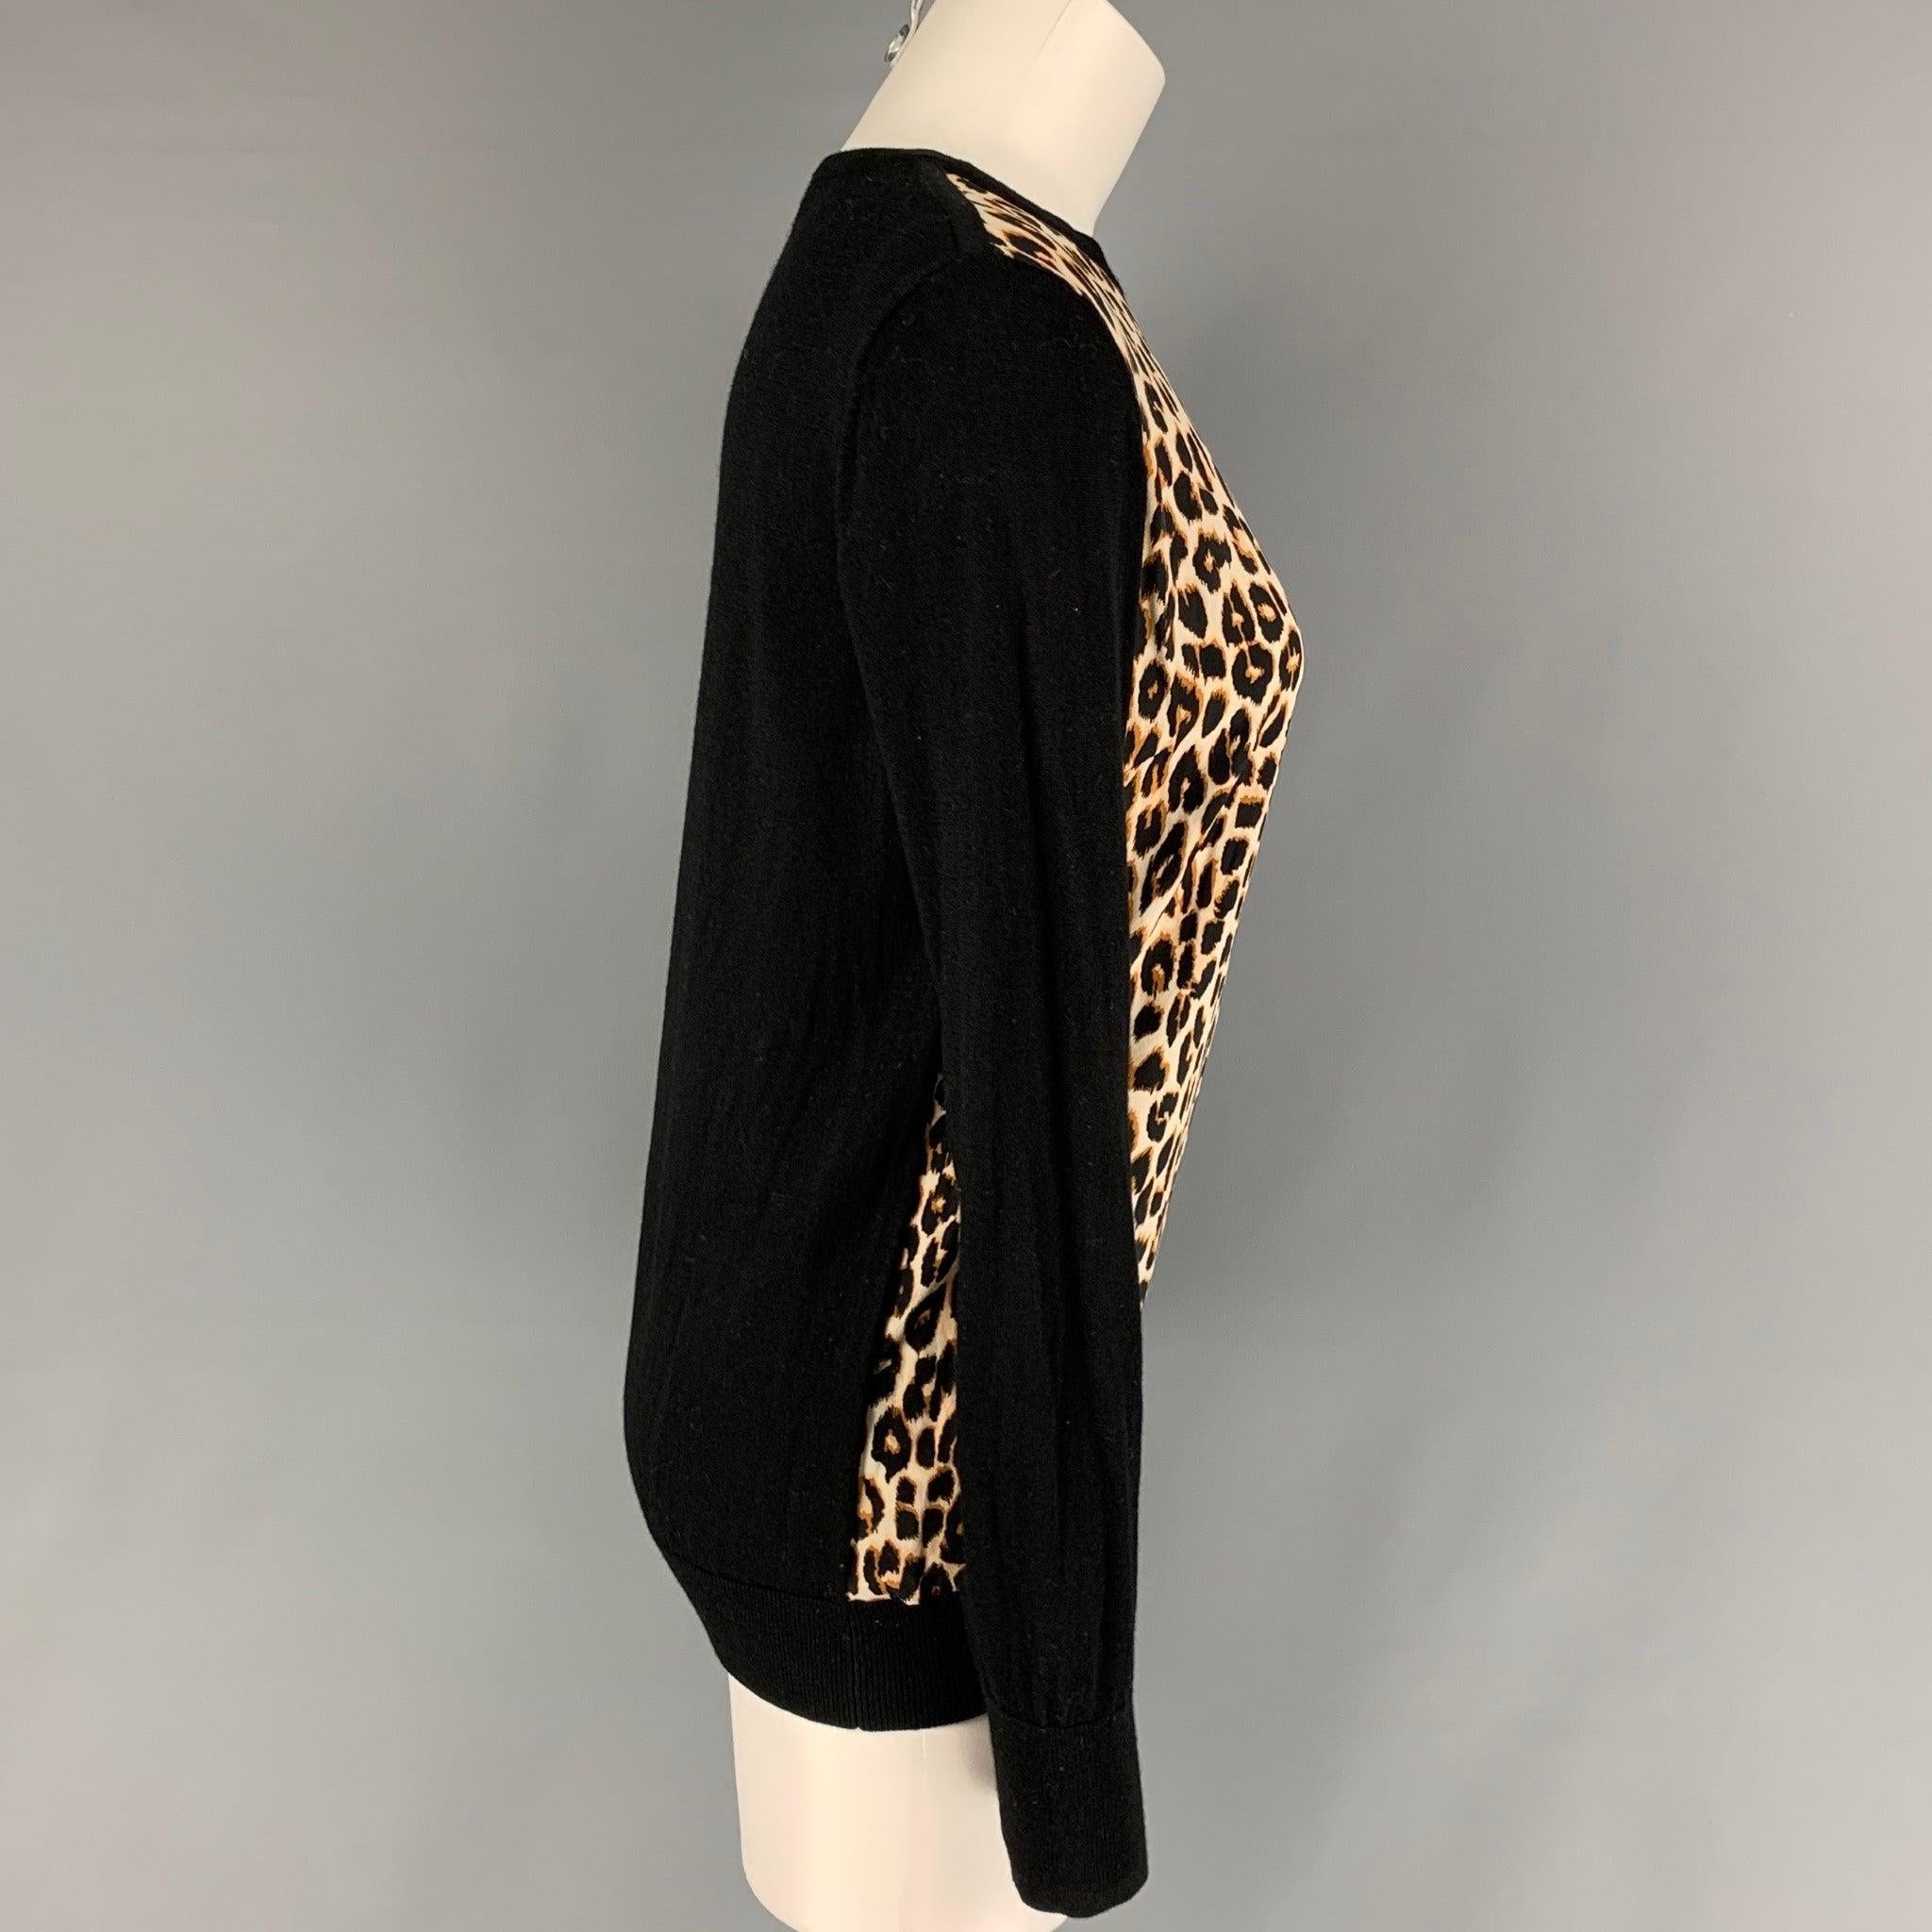 Der EQUIPMENT Pullover mit Rundhalsausschnitt ist mit einem schwarz-hellbraunen Leopardenmuster bedruckt.
Sehr gut
Gebrauchtes Zustand. 

Markiert:   M  

Abmessungen: 
 
Schultern: 15,5 Zoll  Oberweite: 38 Zoll  Ärmel: 26,5 Zoll  Länge: 25 Zoll 
 